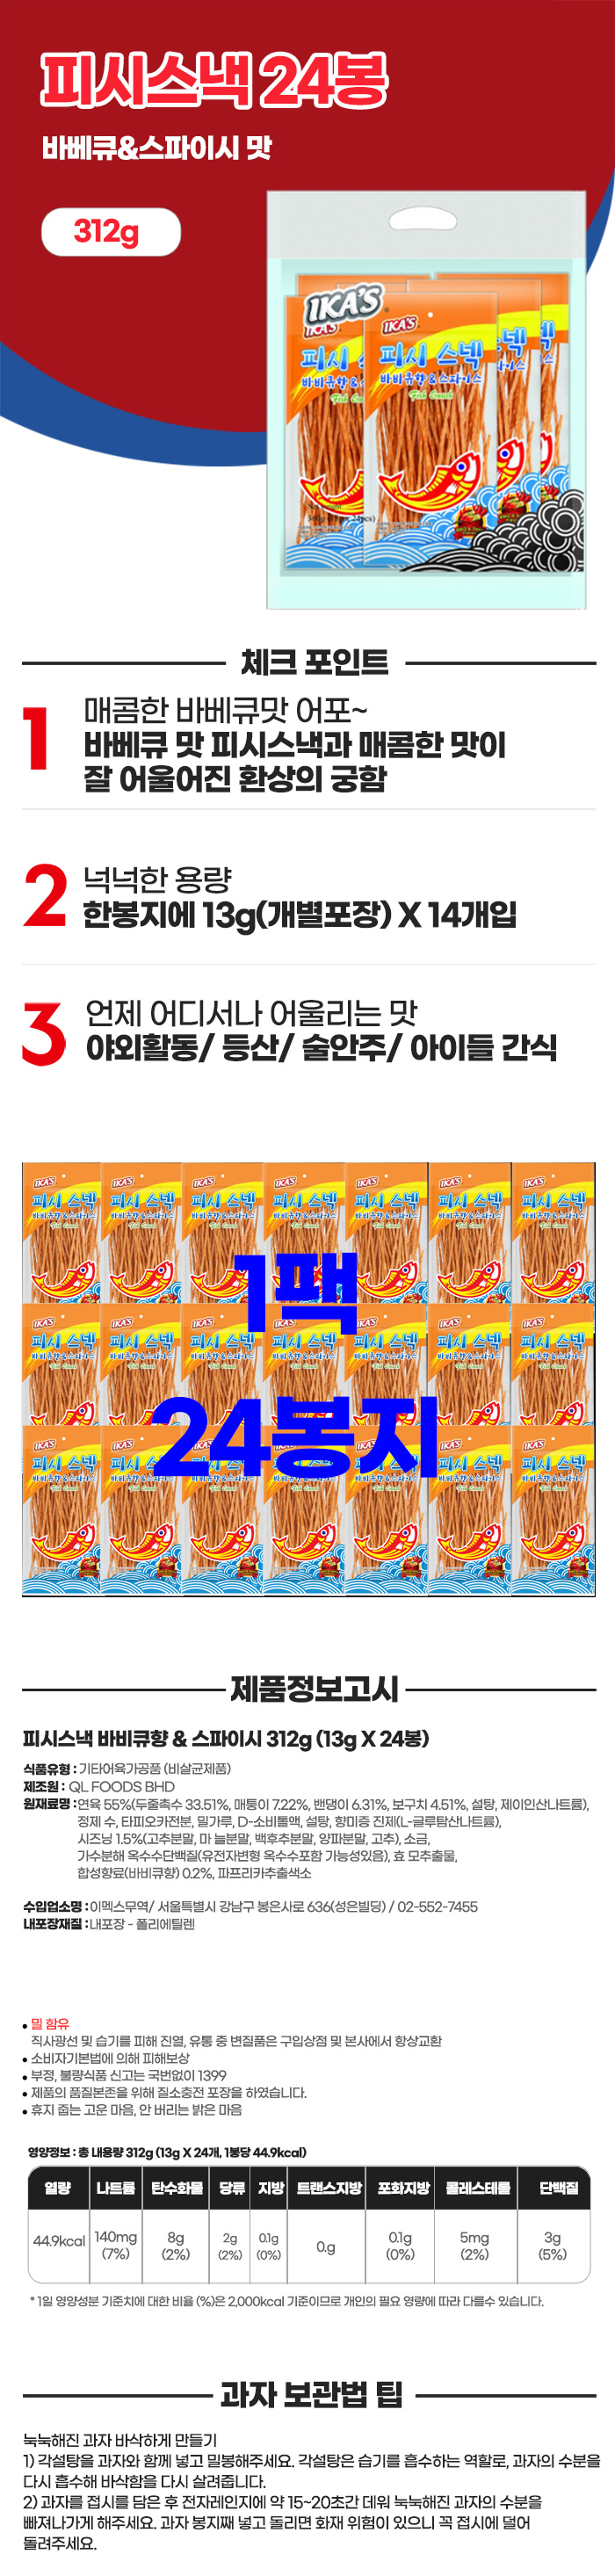 289-Fish-Snack-BBQ-Flavor-%2526-Spicy-312g_220128.jpg